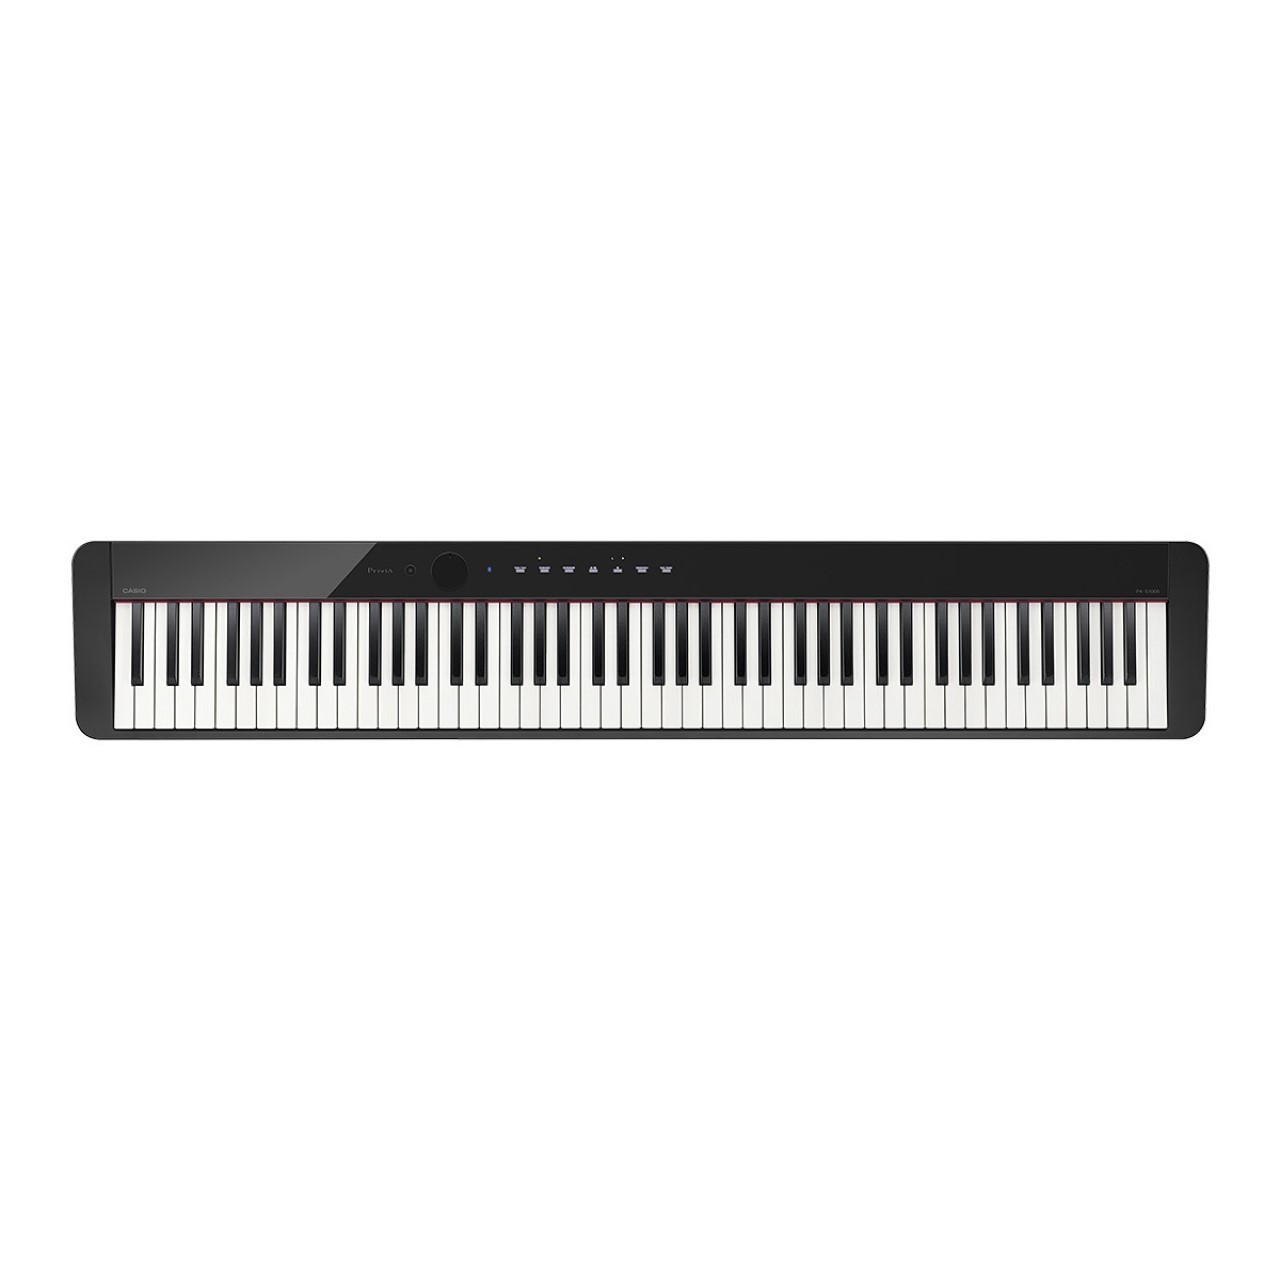 鍵盤楽器電子ピアノ カシオ CASIO Privia PX-S1000 BK - 電子ピアノ